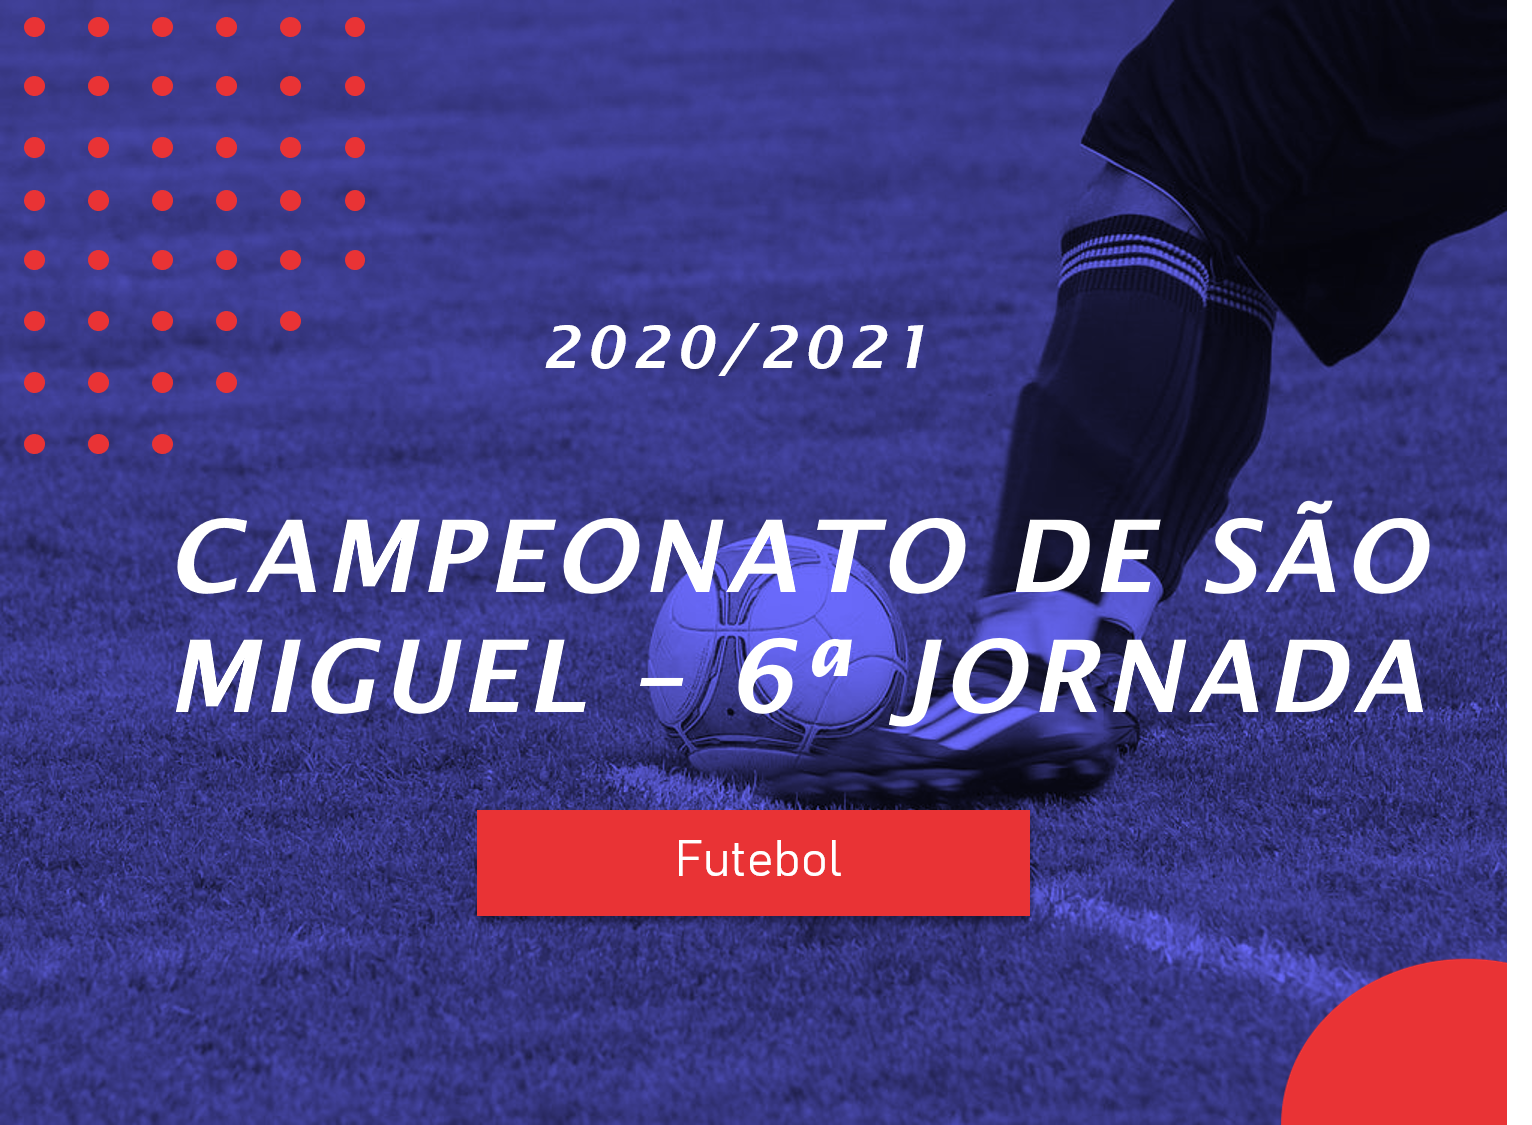 Campeonato de São Miguel - 6ª Jornada - Antevisão